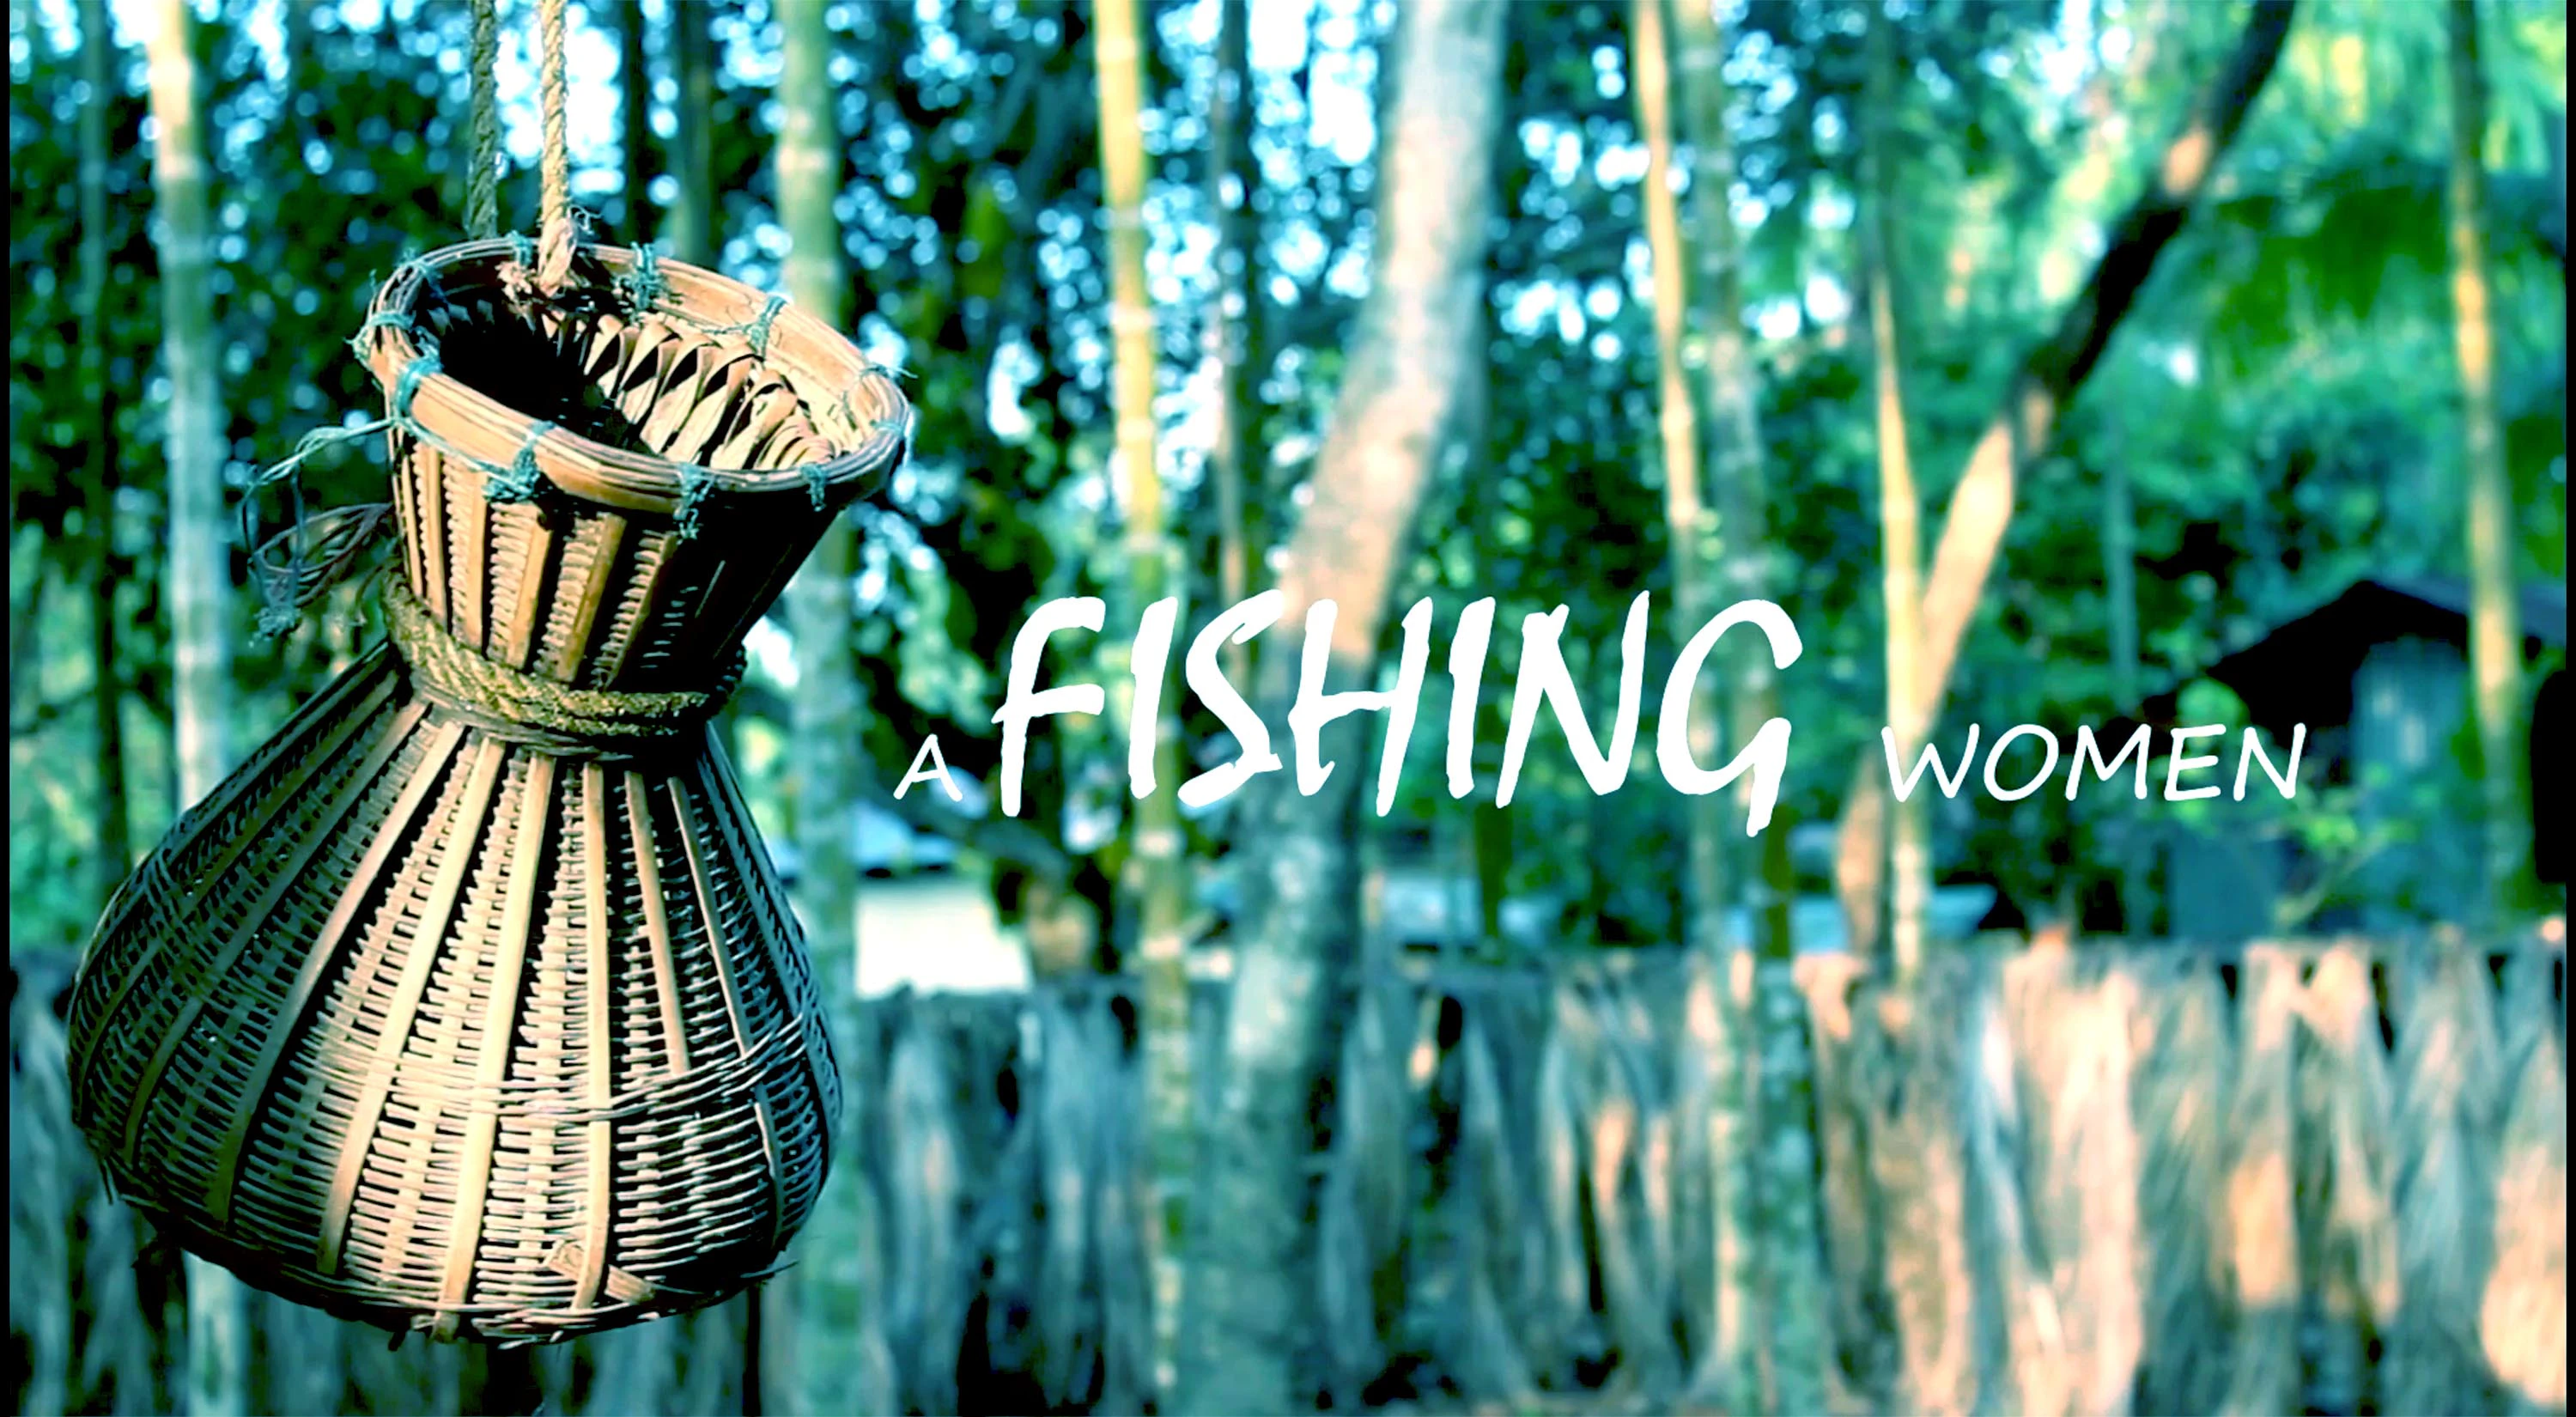 A FISHING WOMEN